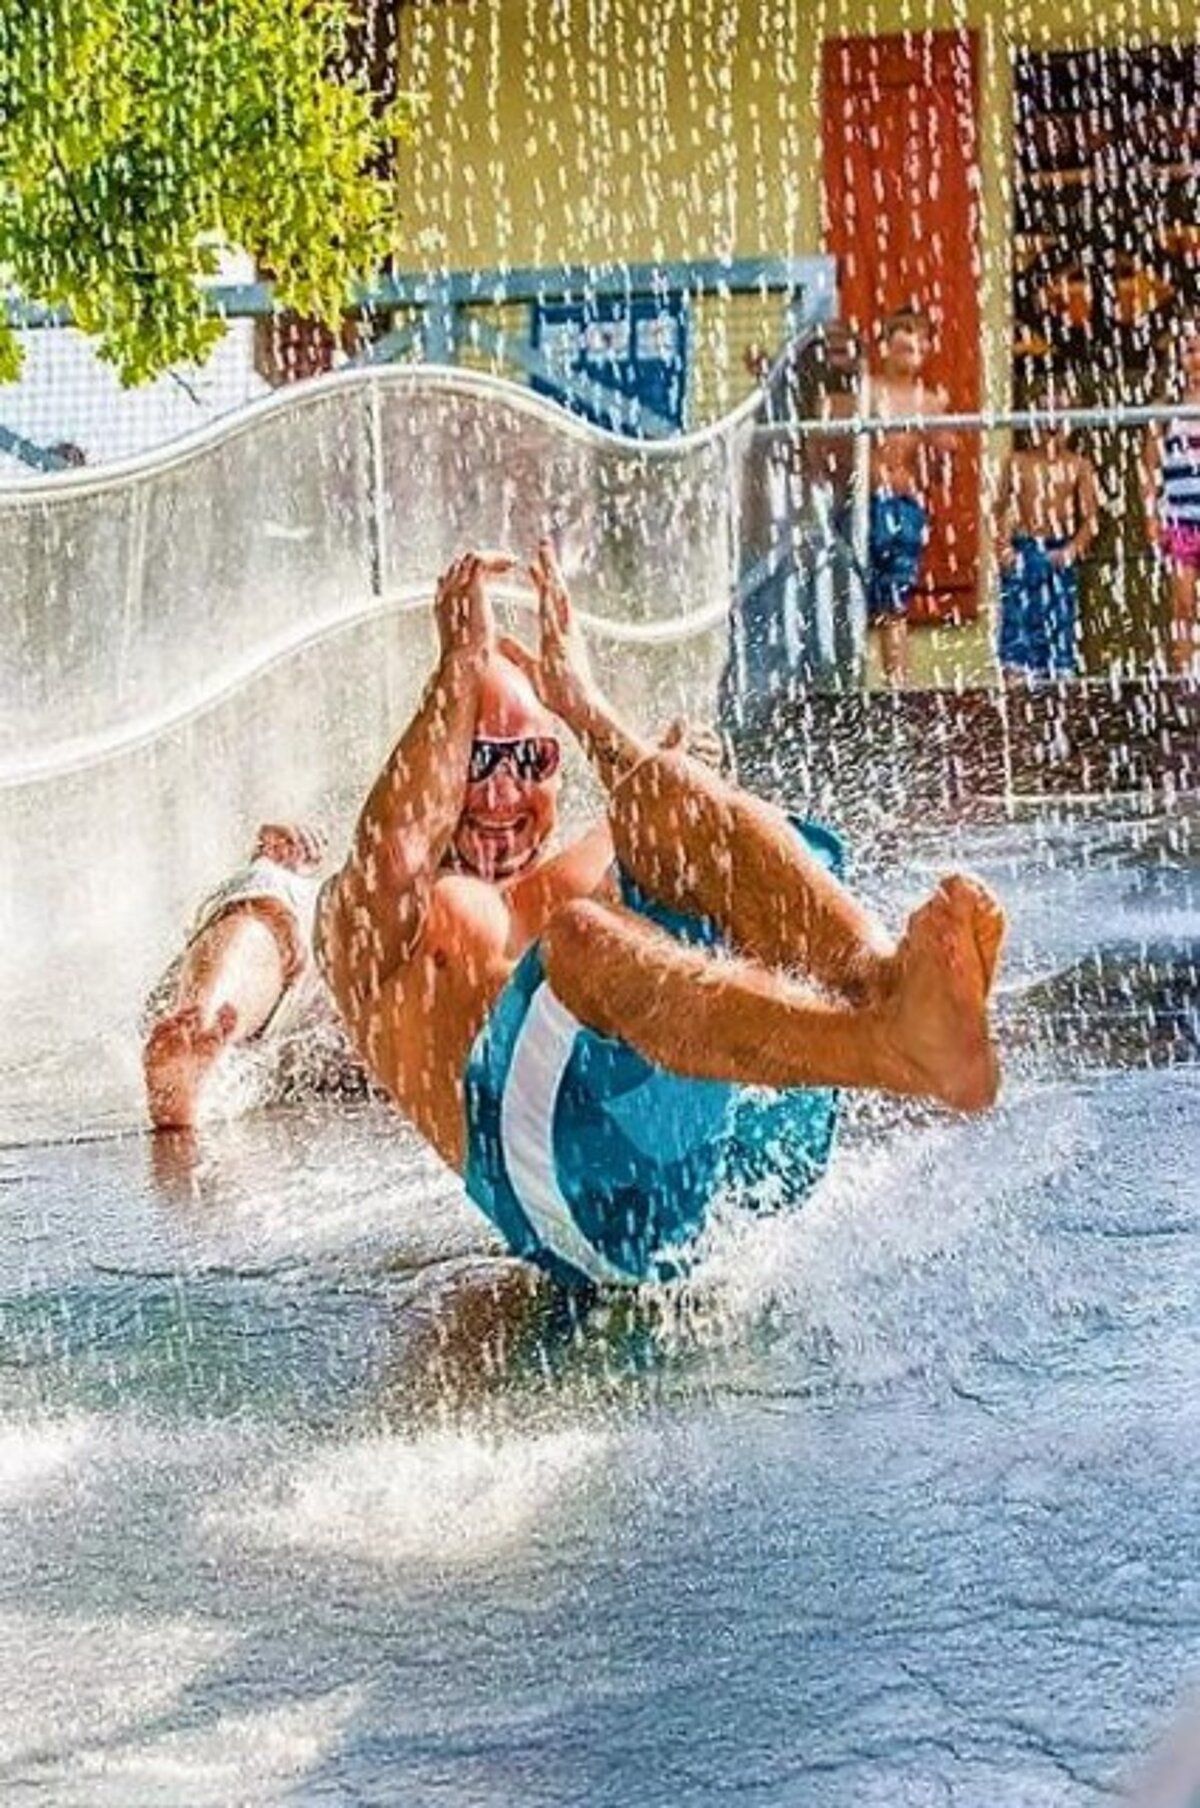 Ein Mann rutsch auf einer mit Wasser bedeckten Plastikbahn